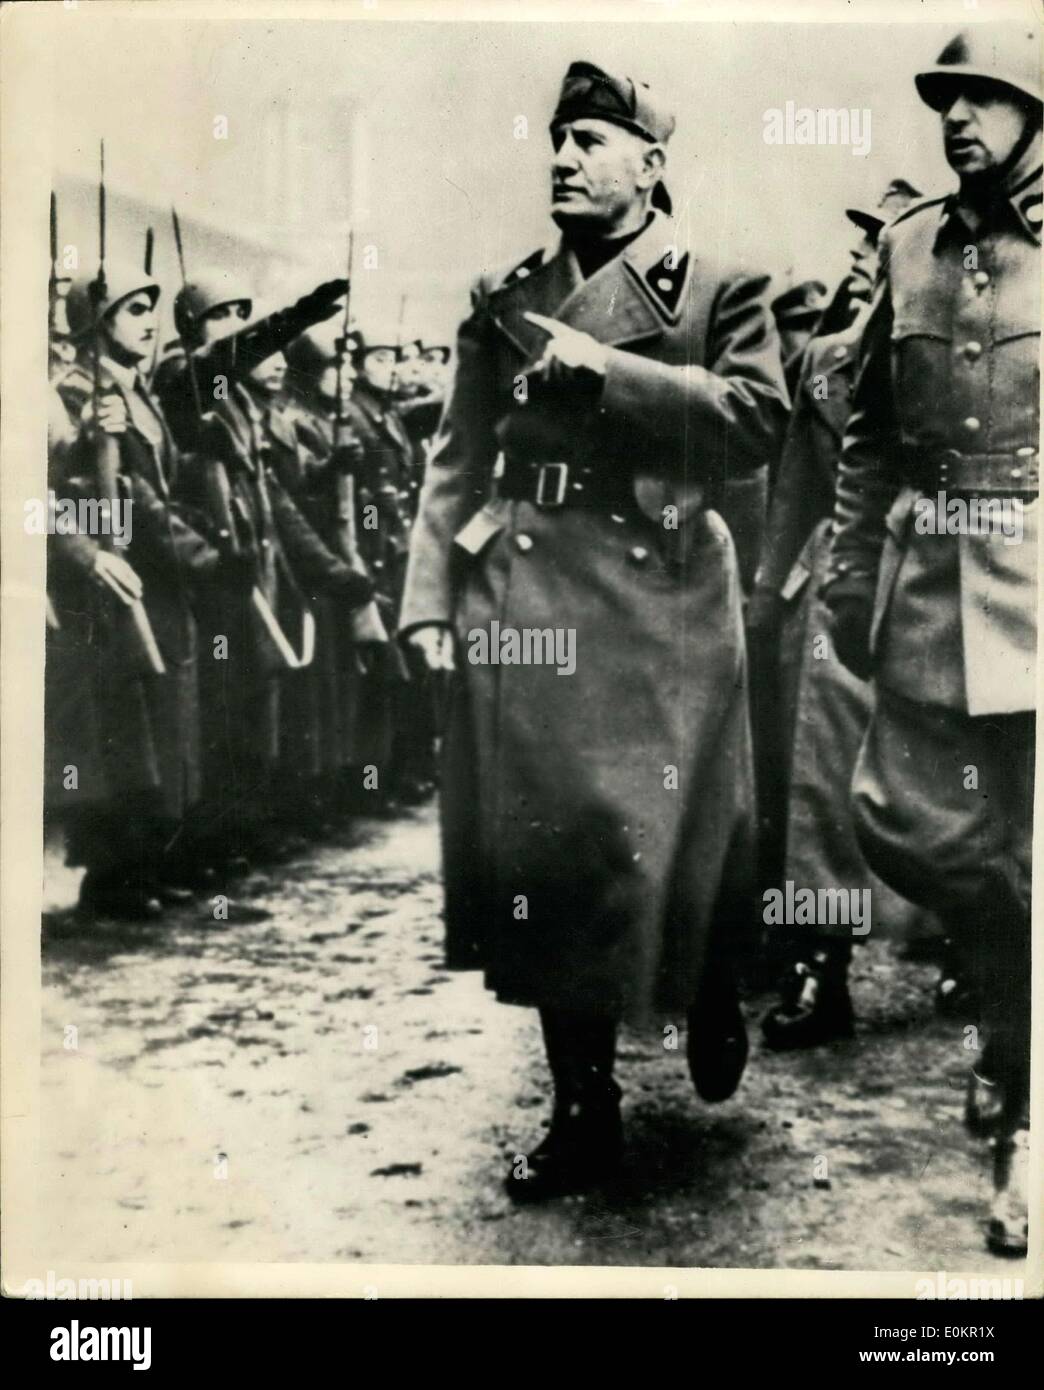 Avril 08, 1938 - Mussolini En vedette : II Duce apparaît parfois sur pages de magazines et journaux allemands, lorsqu'il Nazis deen il sage de donner de la publicité à leurs collègues fasciste. Photo montre ici, c'est Mussolini inspectant les troupes fascistes italiennes au cours de n'est visiter Milan. Banque D'Images